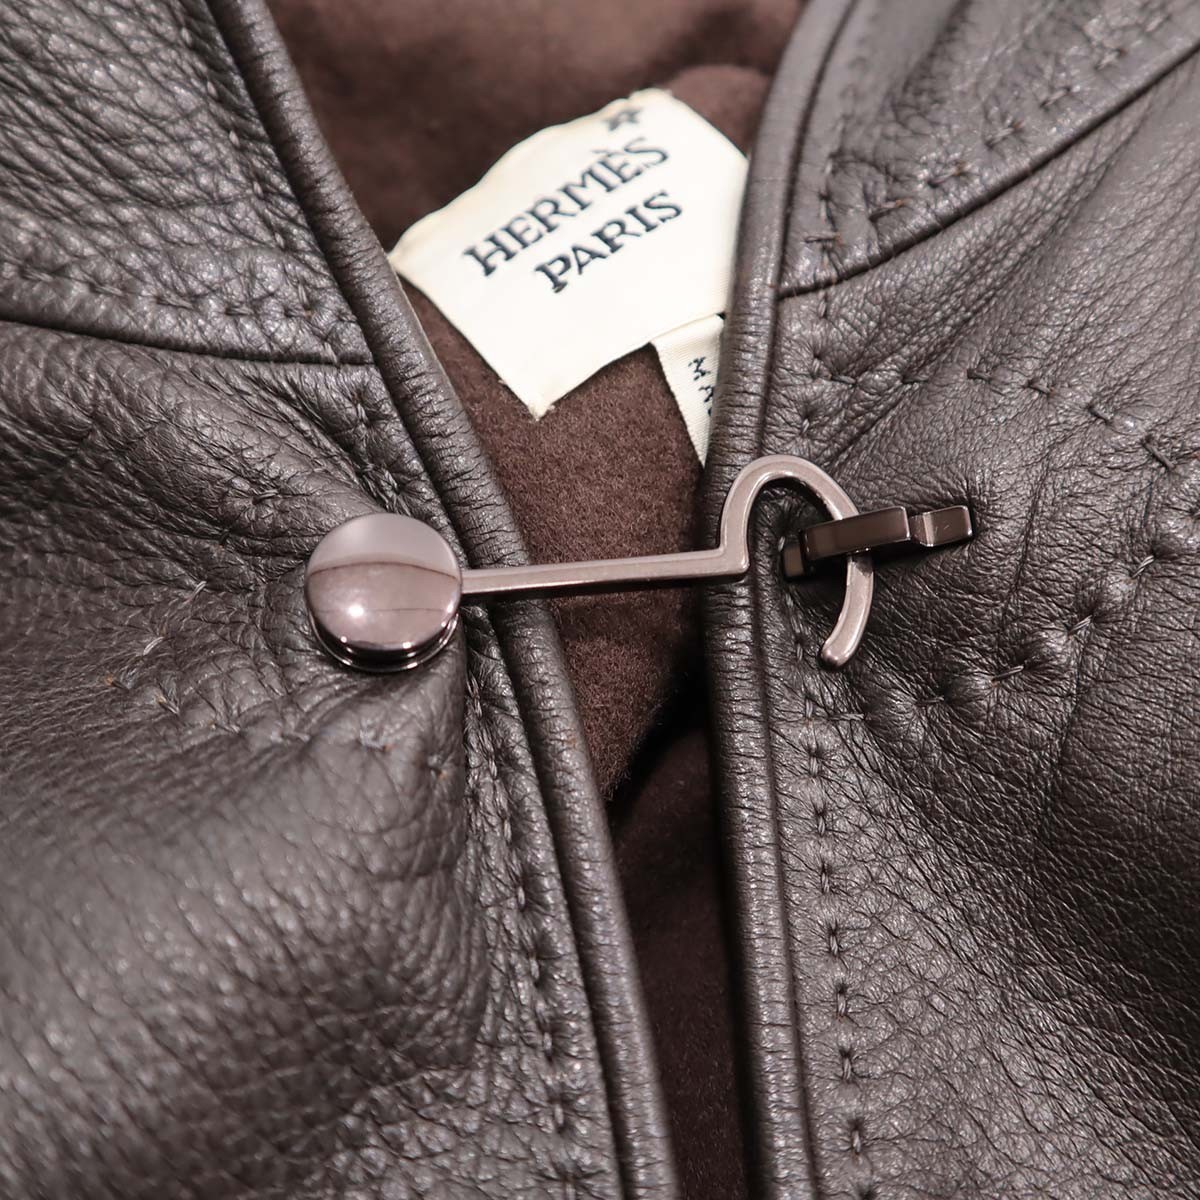  ломбард одежда HERMES Hermes пальто пончо кожа олень кожа кашемир Brown с капюшоном указанный размер SM... ломбард 